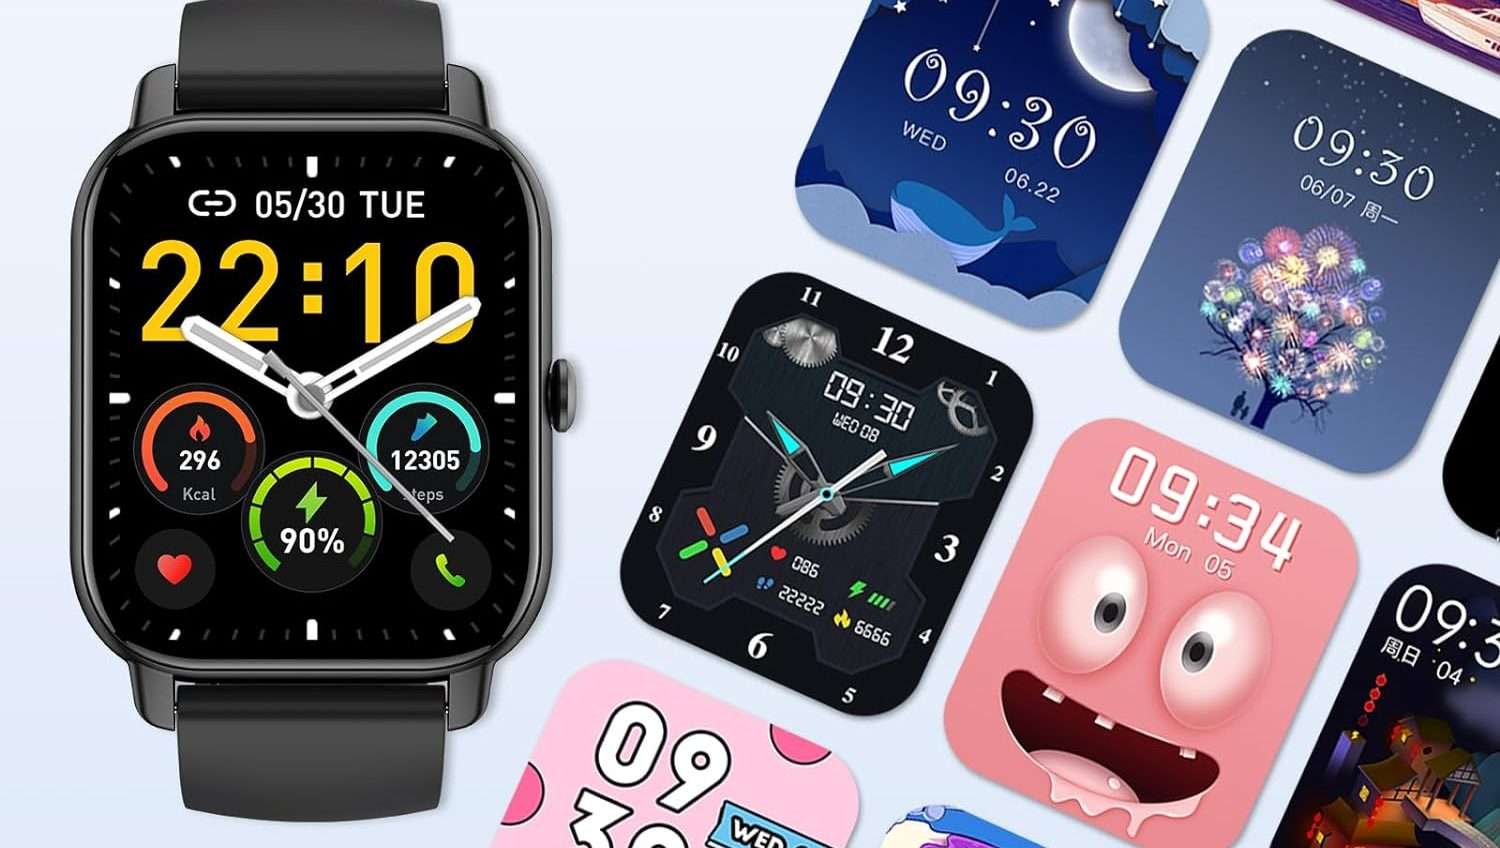 Questo super smartwatch è in offerta su Amazon a solamente 39,99€ (-56%)